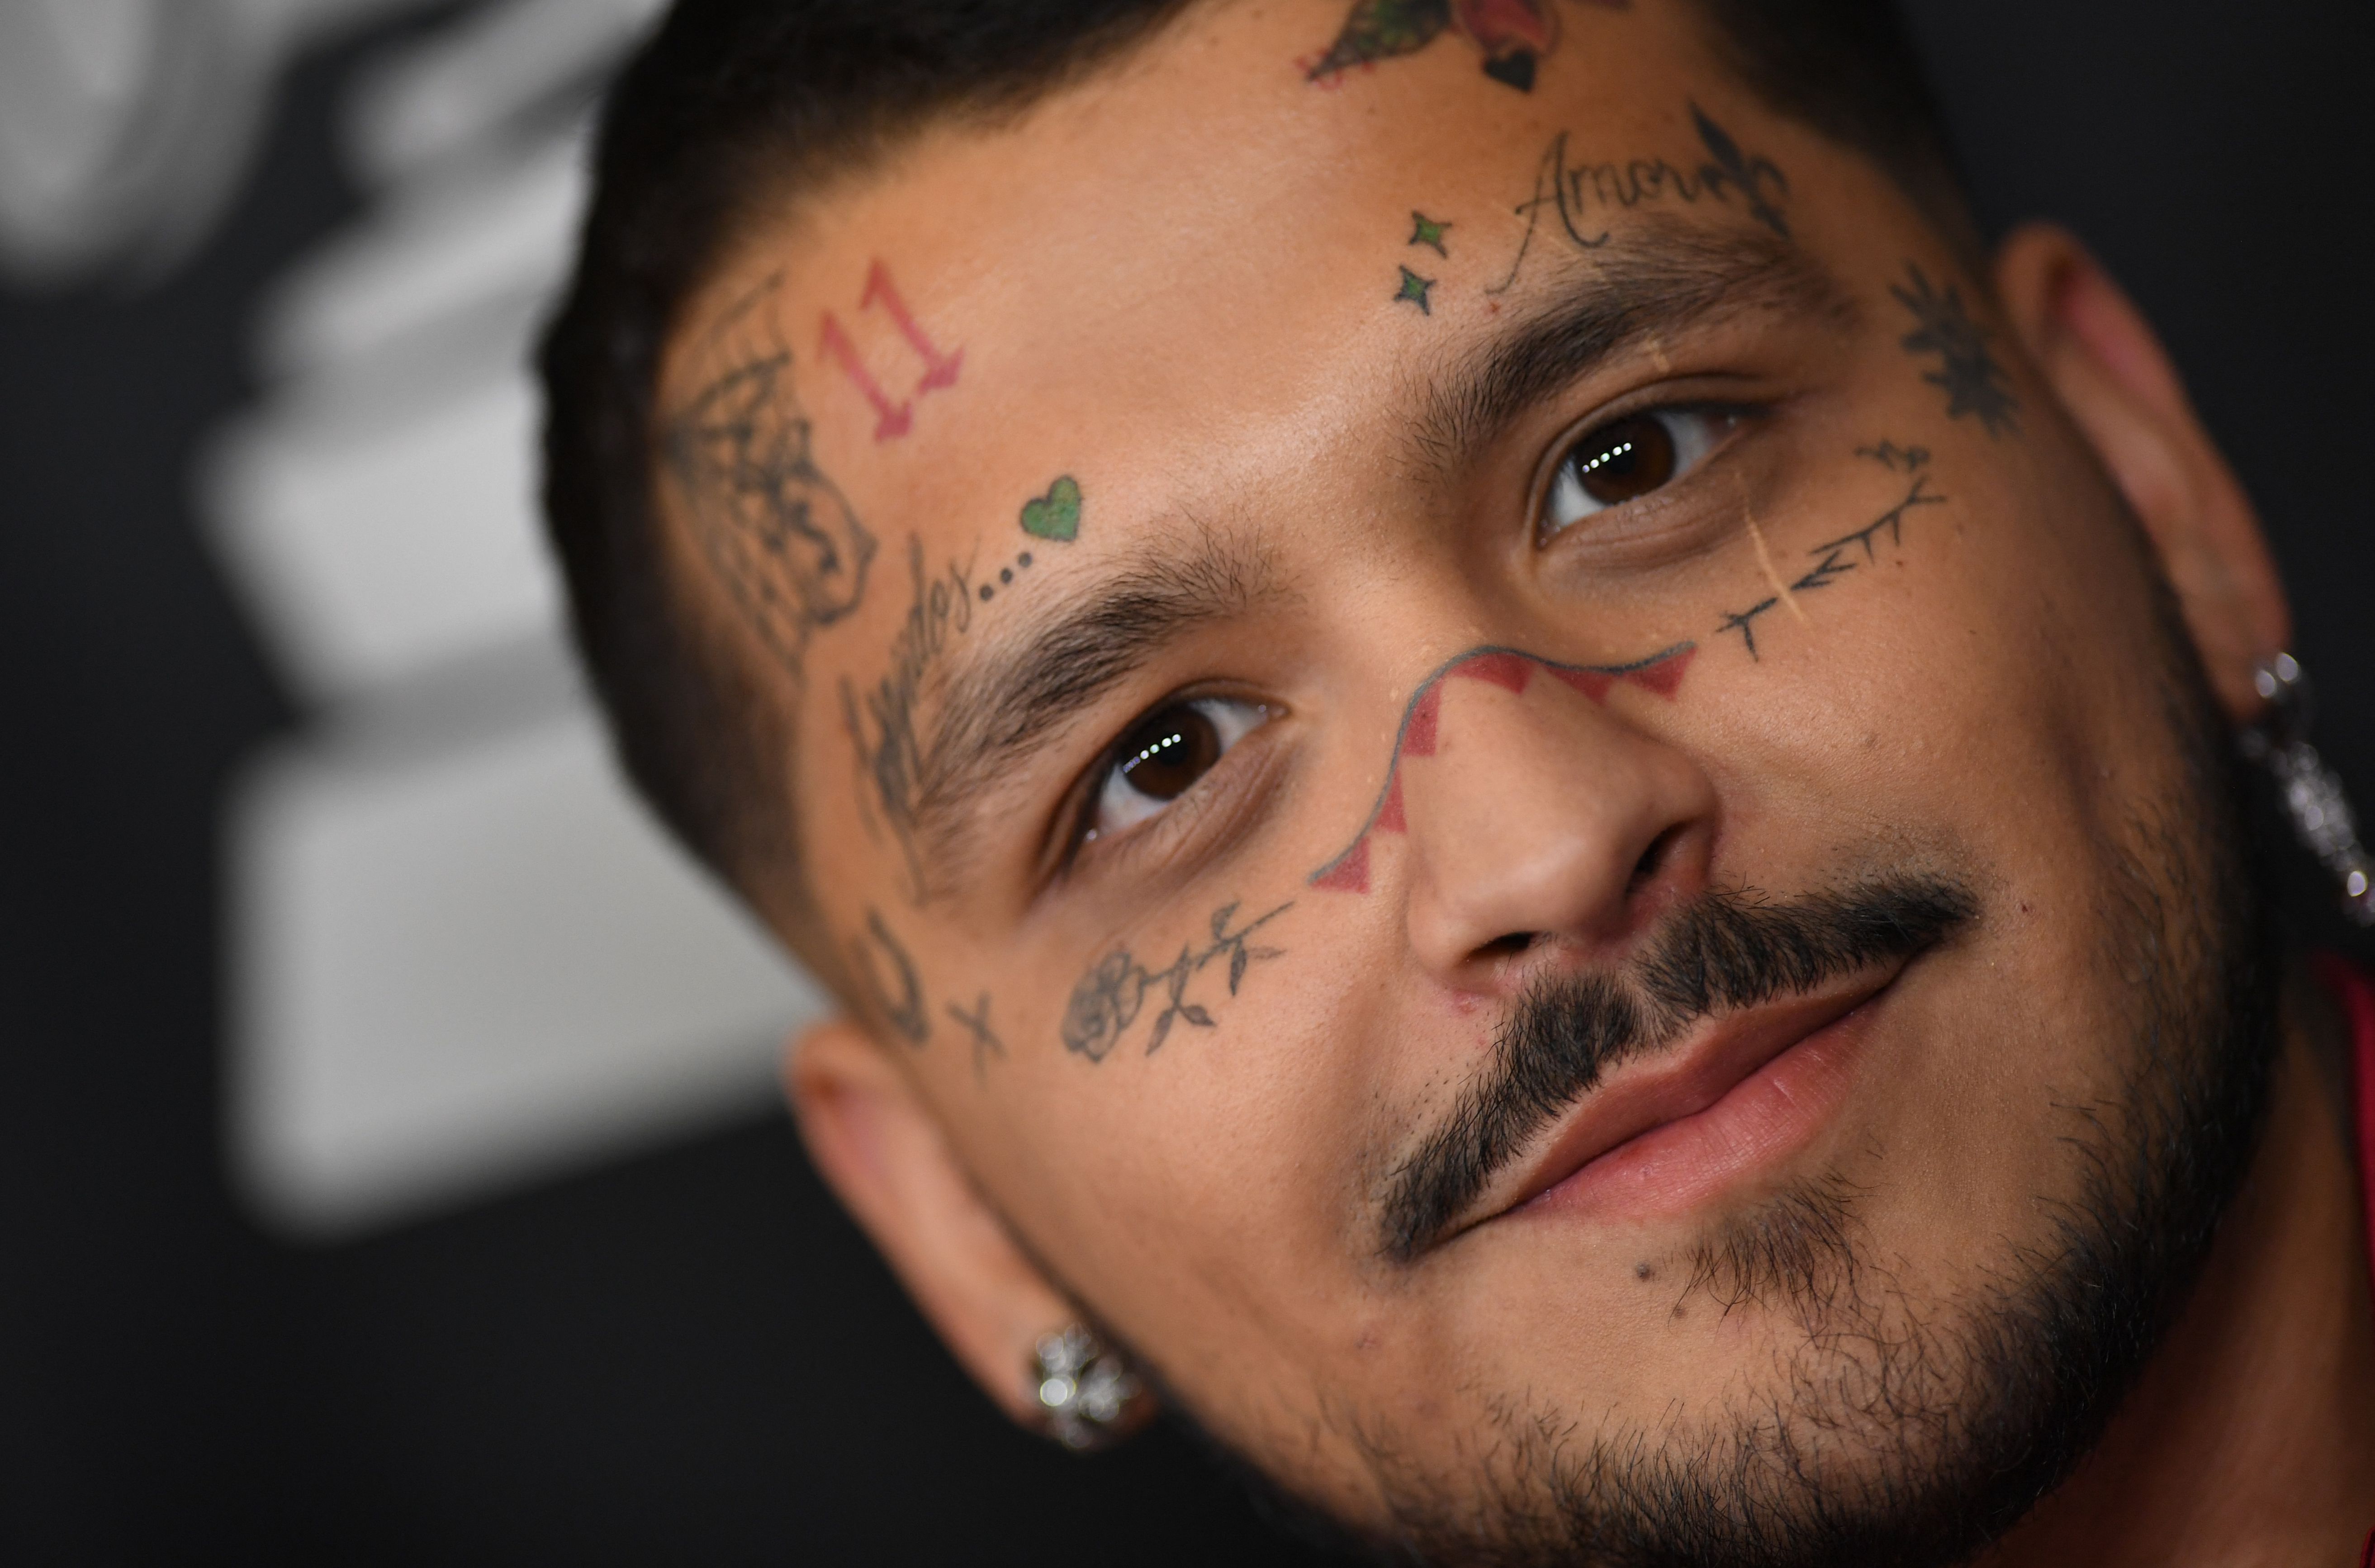 Christian Nodal explica el significado de sus tatuajes y admite